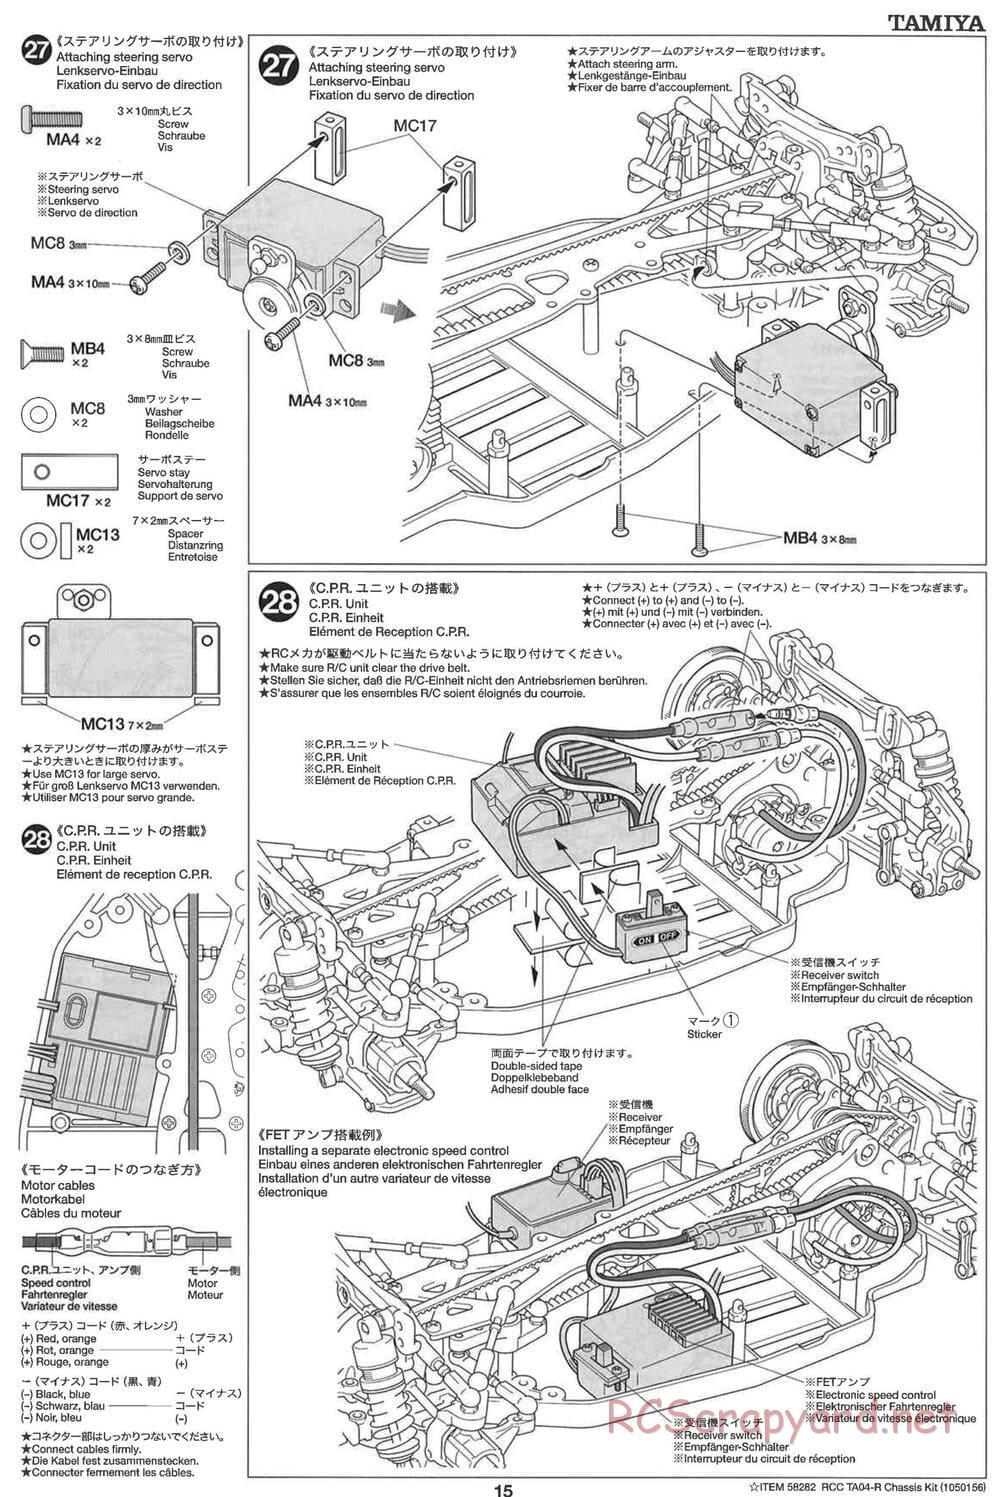 Tamiya - TA-04R Chassis - Manual - Page 15